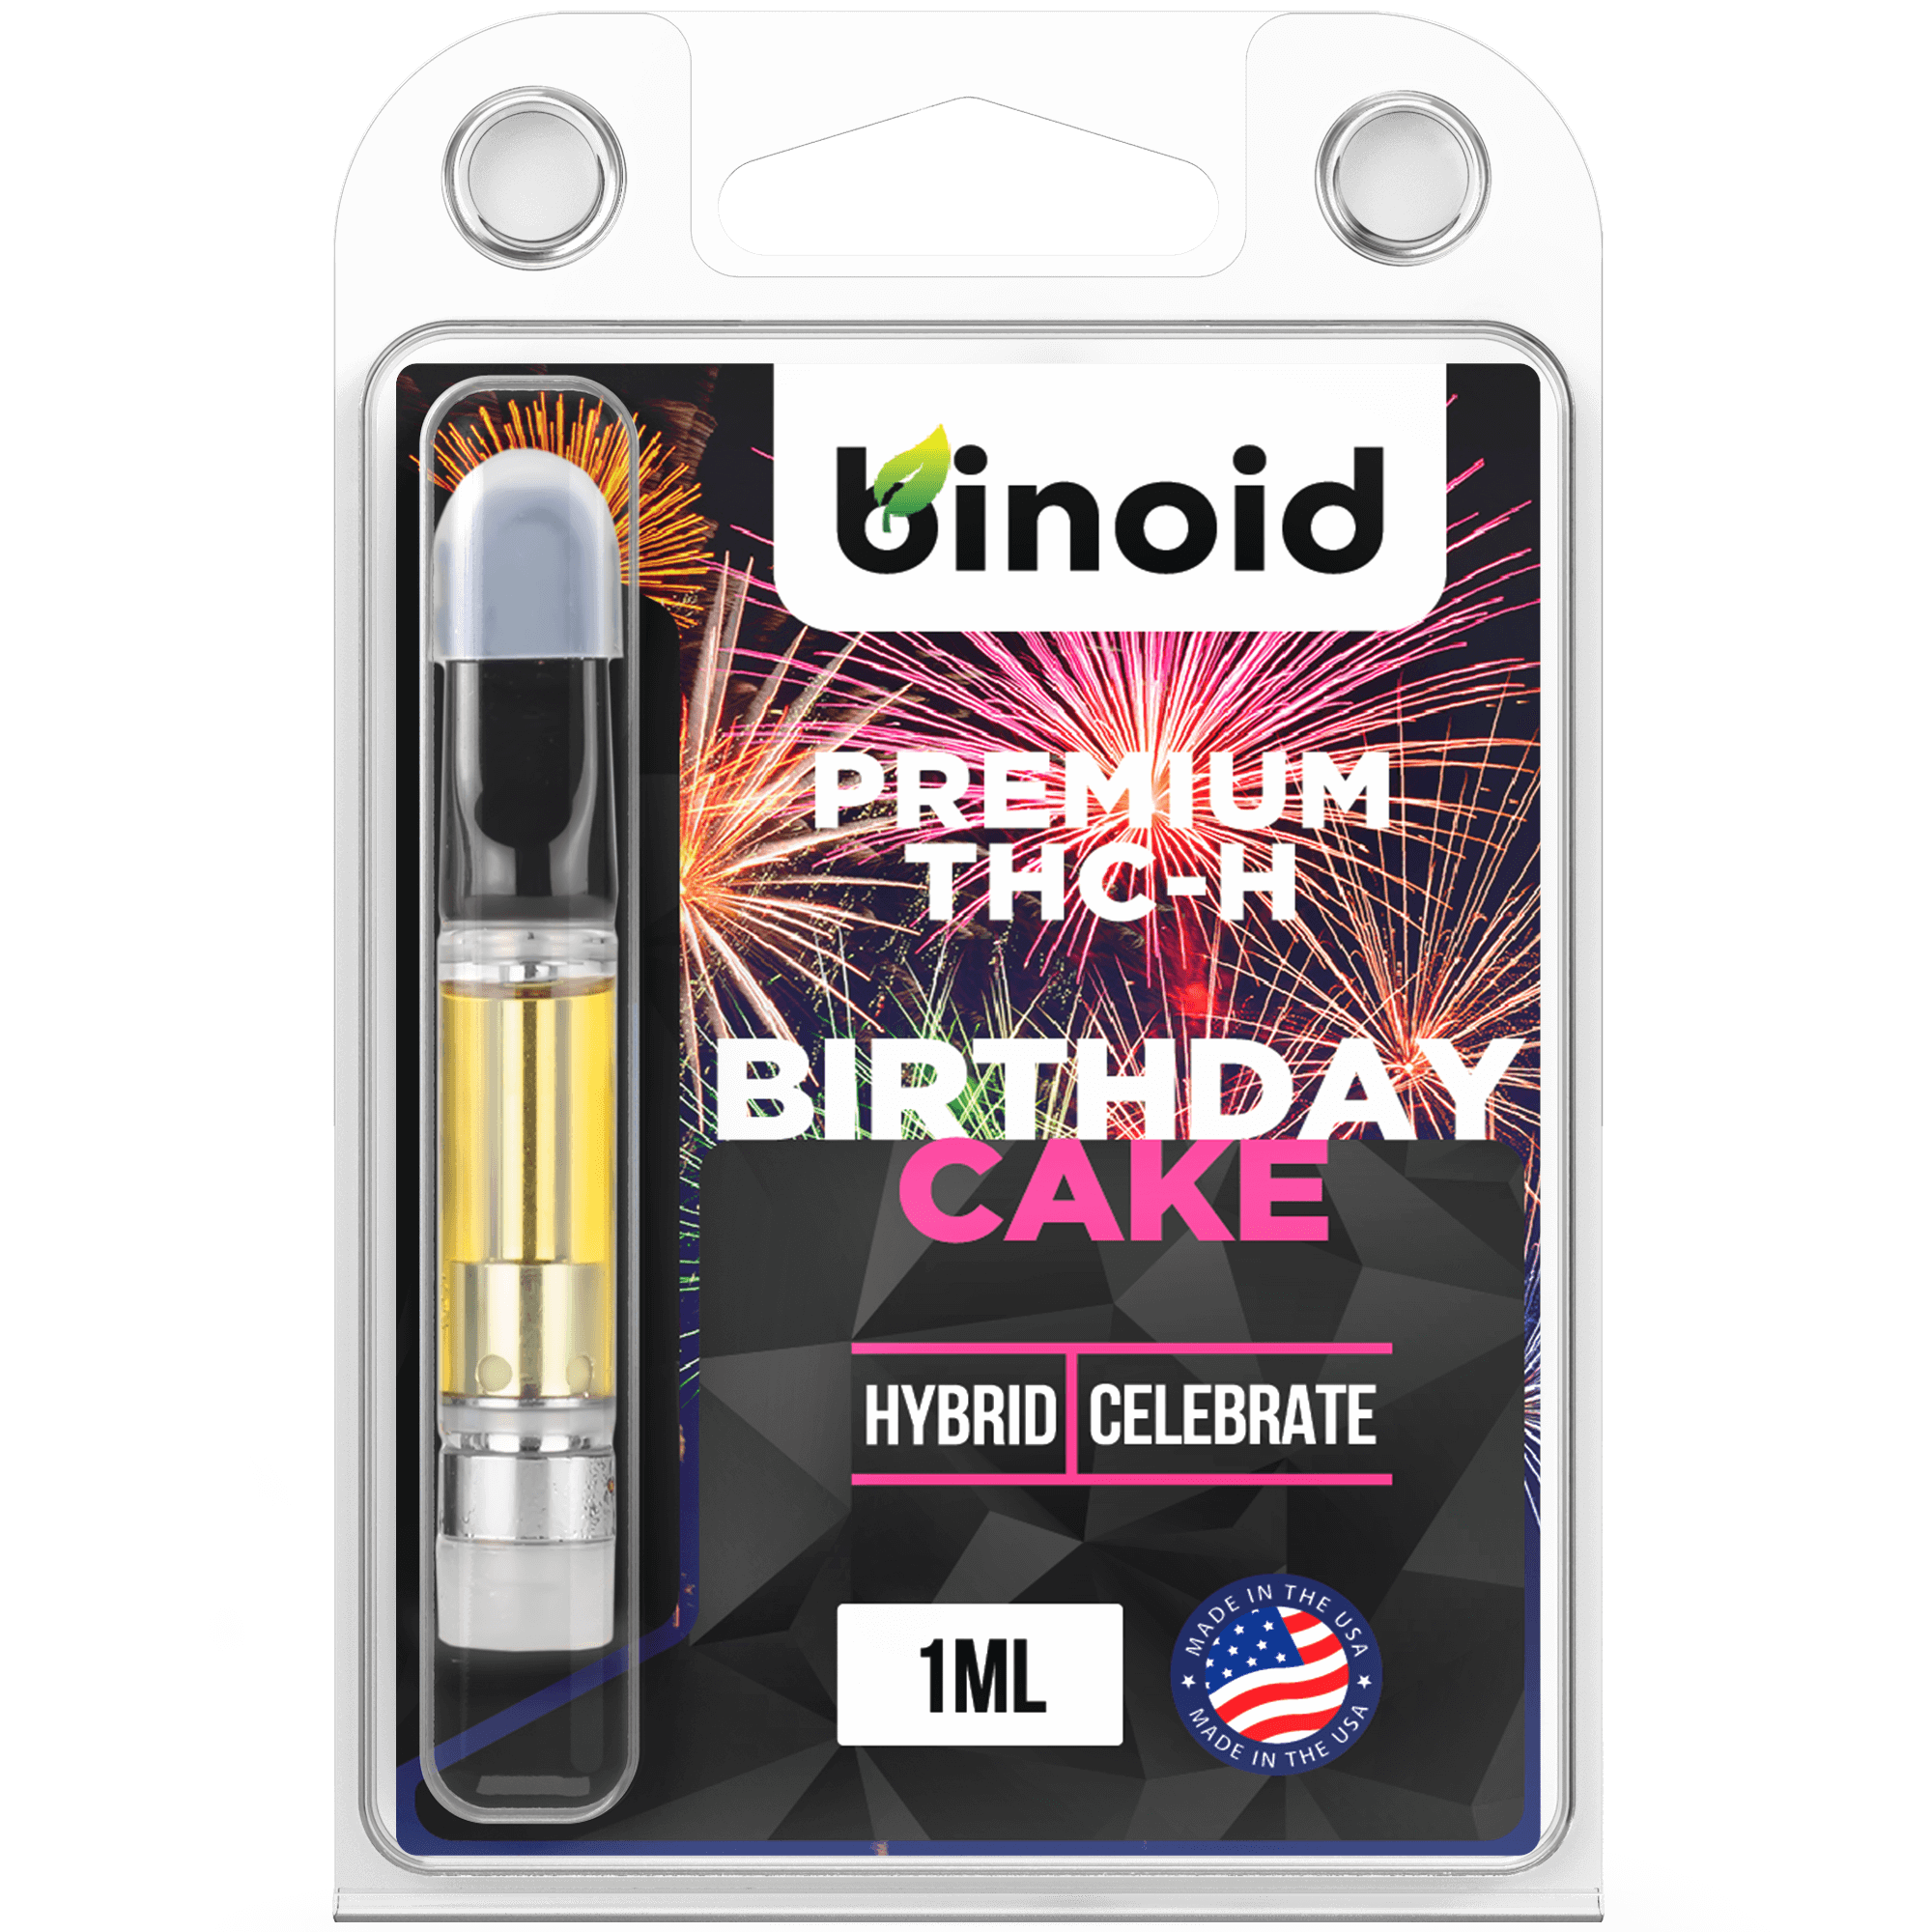 Binoid THC-H Vape Cartridge - Birthday Cake Best Price